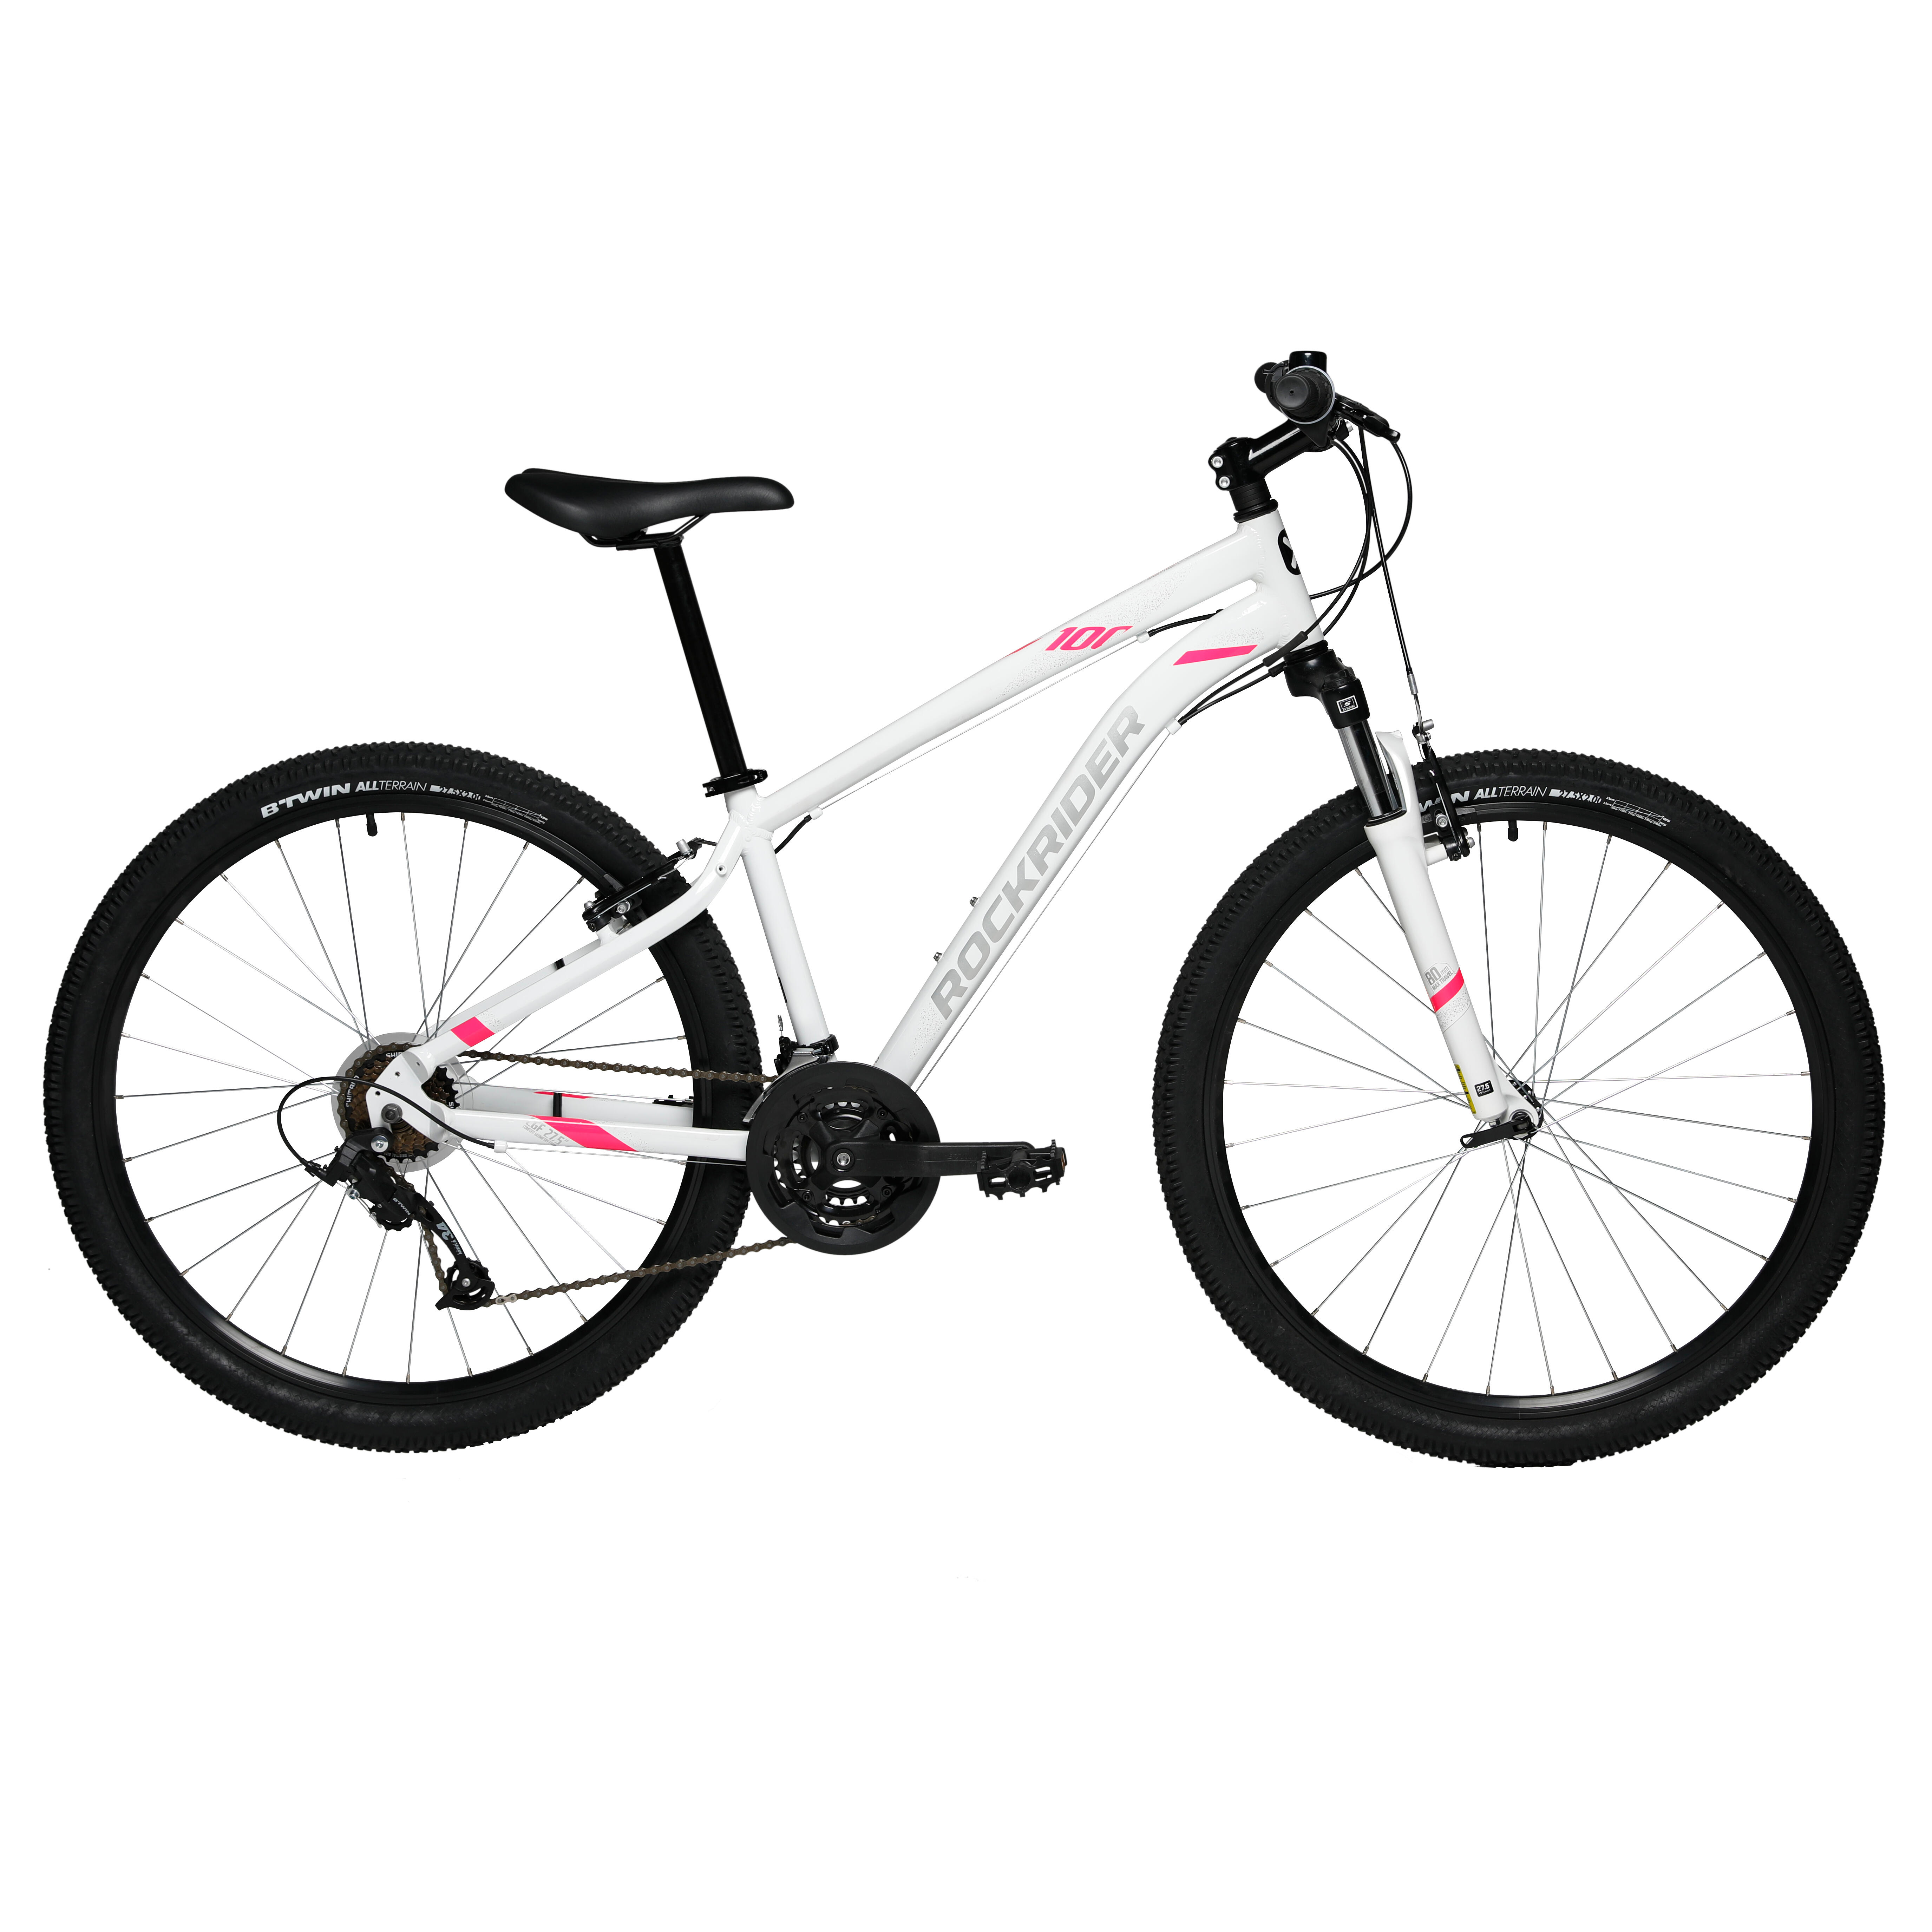 27.5" Women's Mountain Bike - ST 100 White/Pink - ROCKRIDER